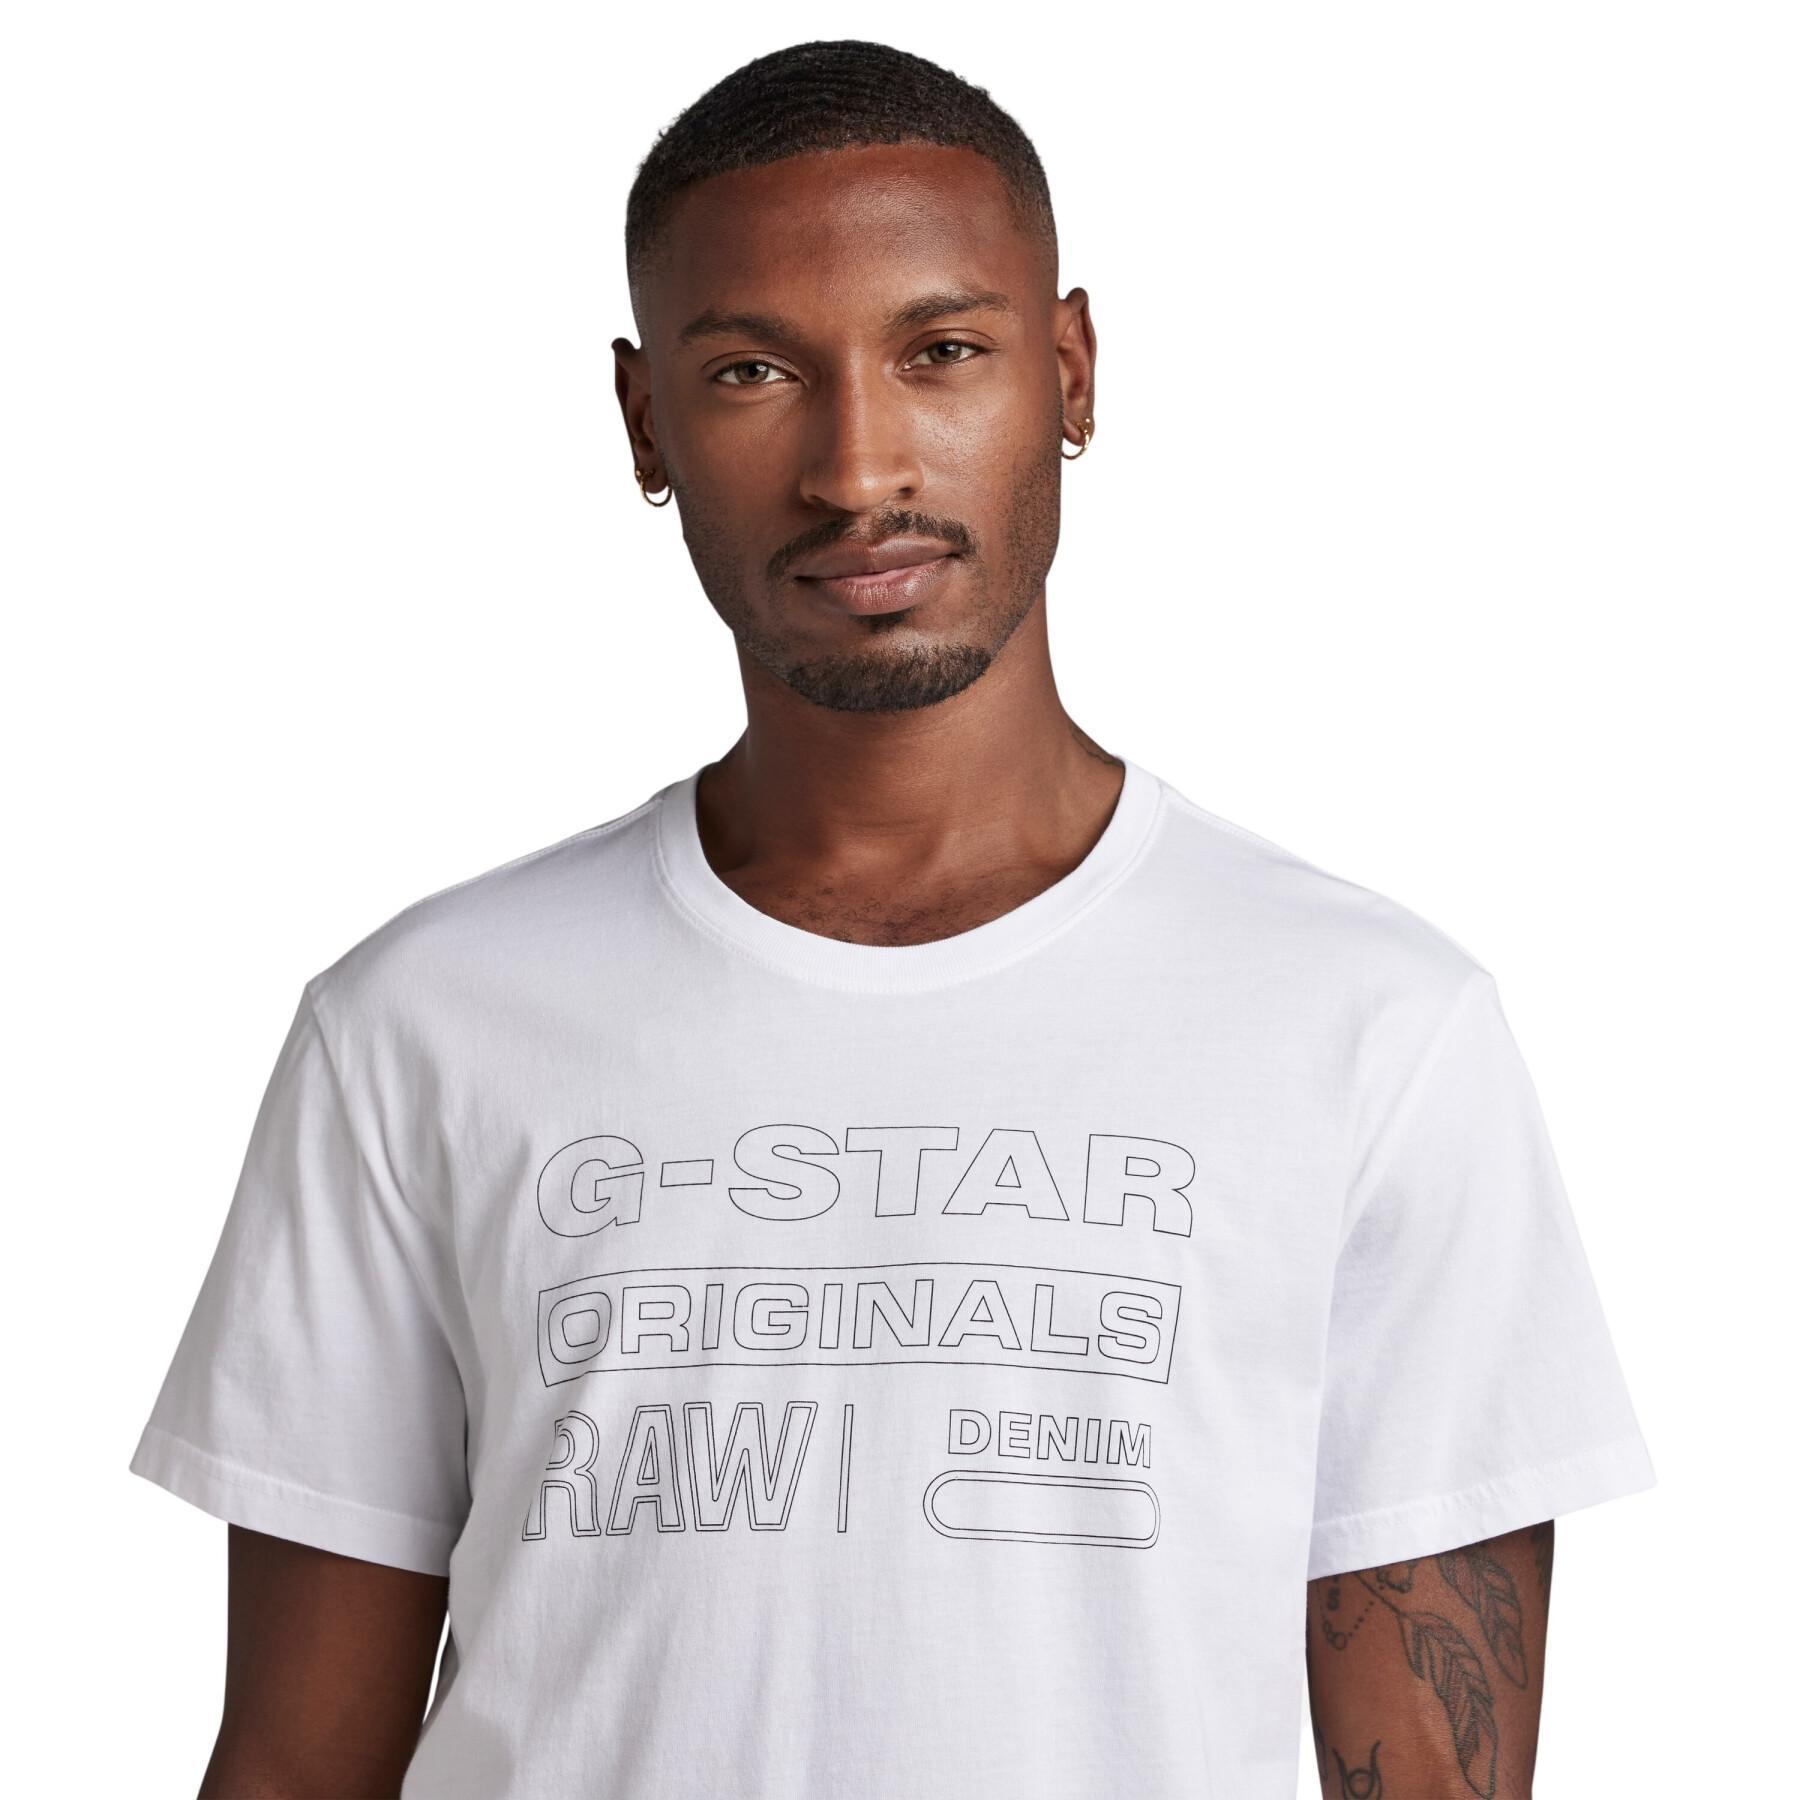 Koszulka G-Star Originals